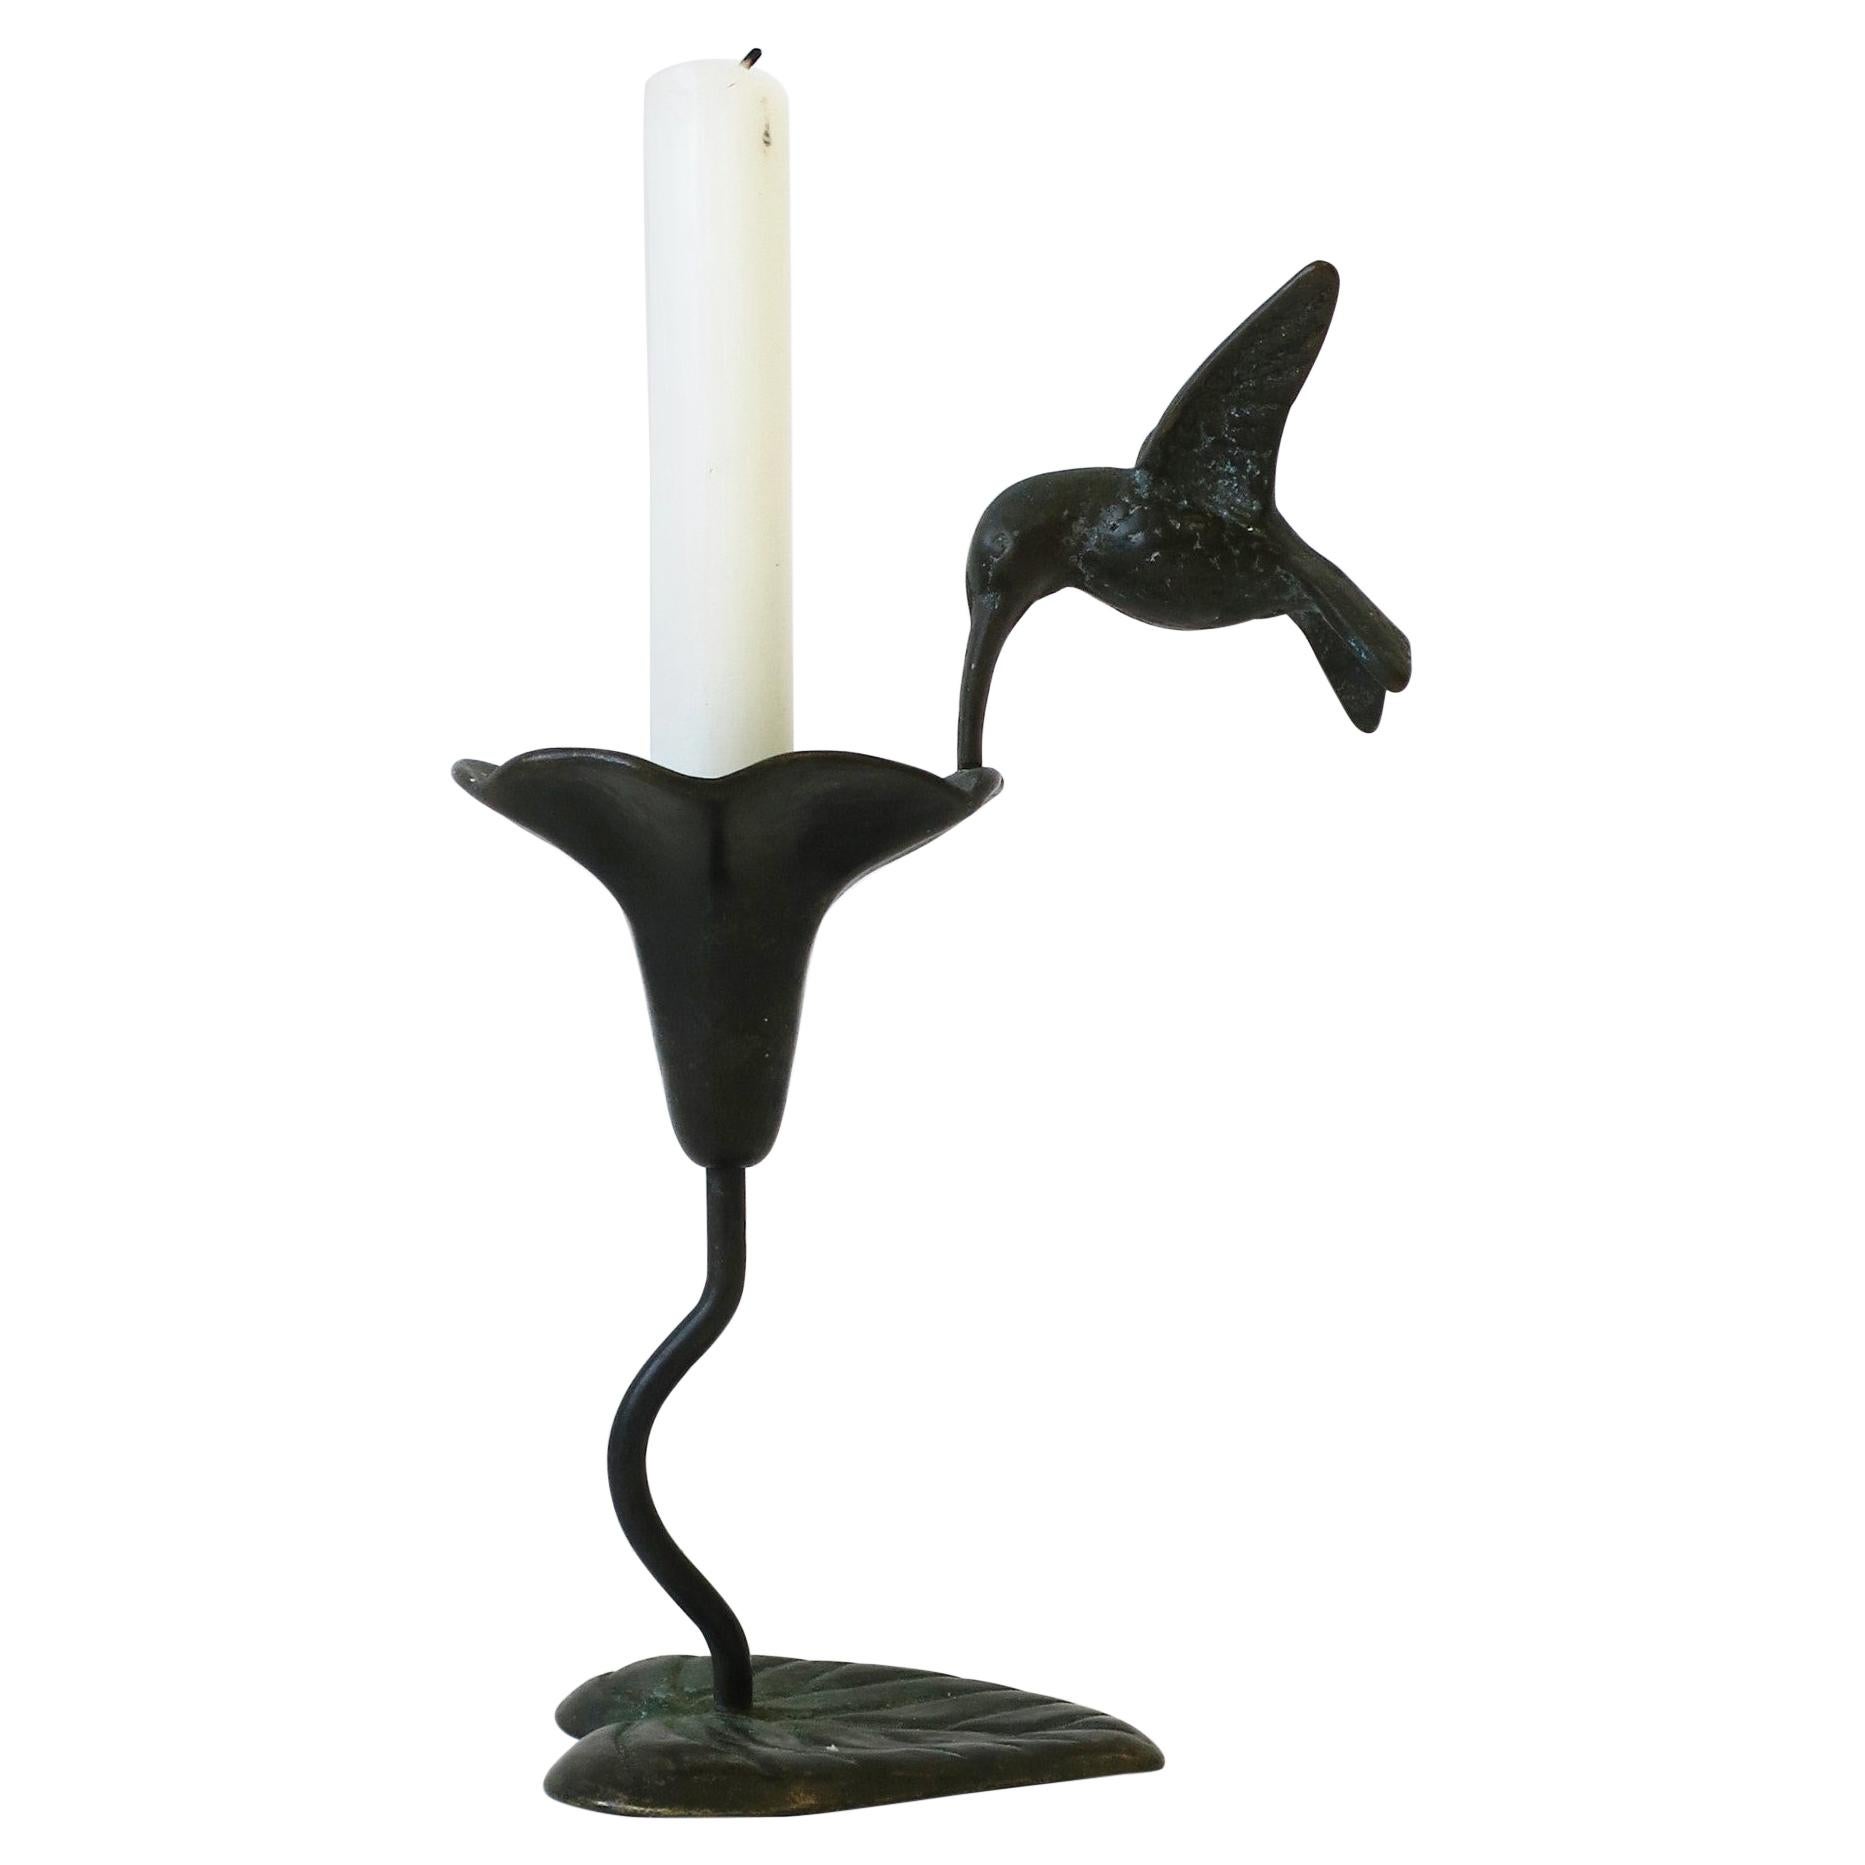 Birds Candlesticks - 4 For Sale on 1stDibs | bird candlesticks 